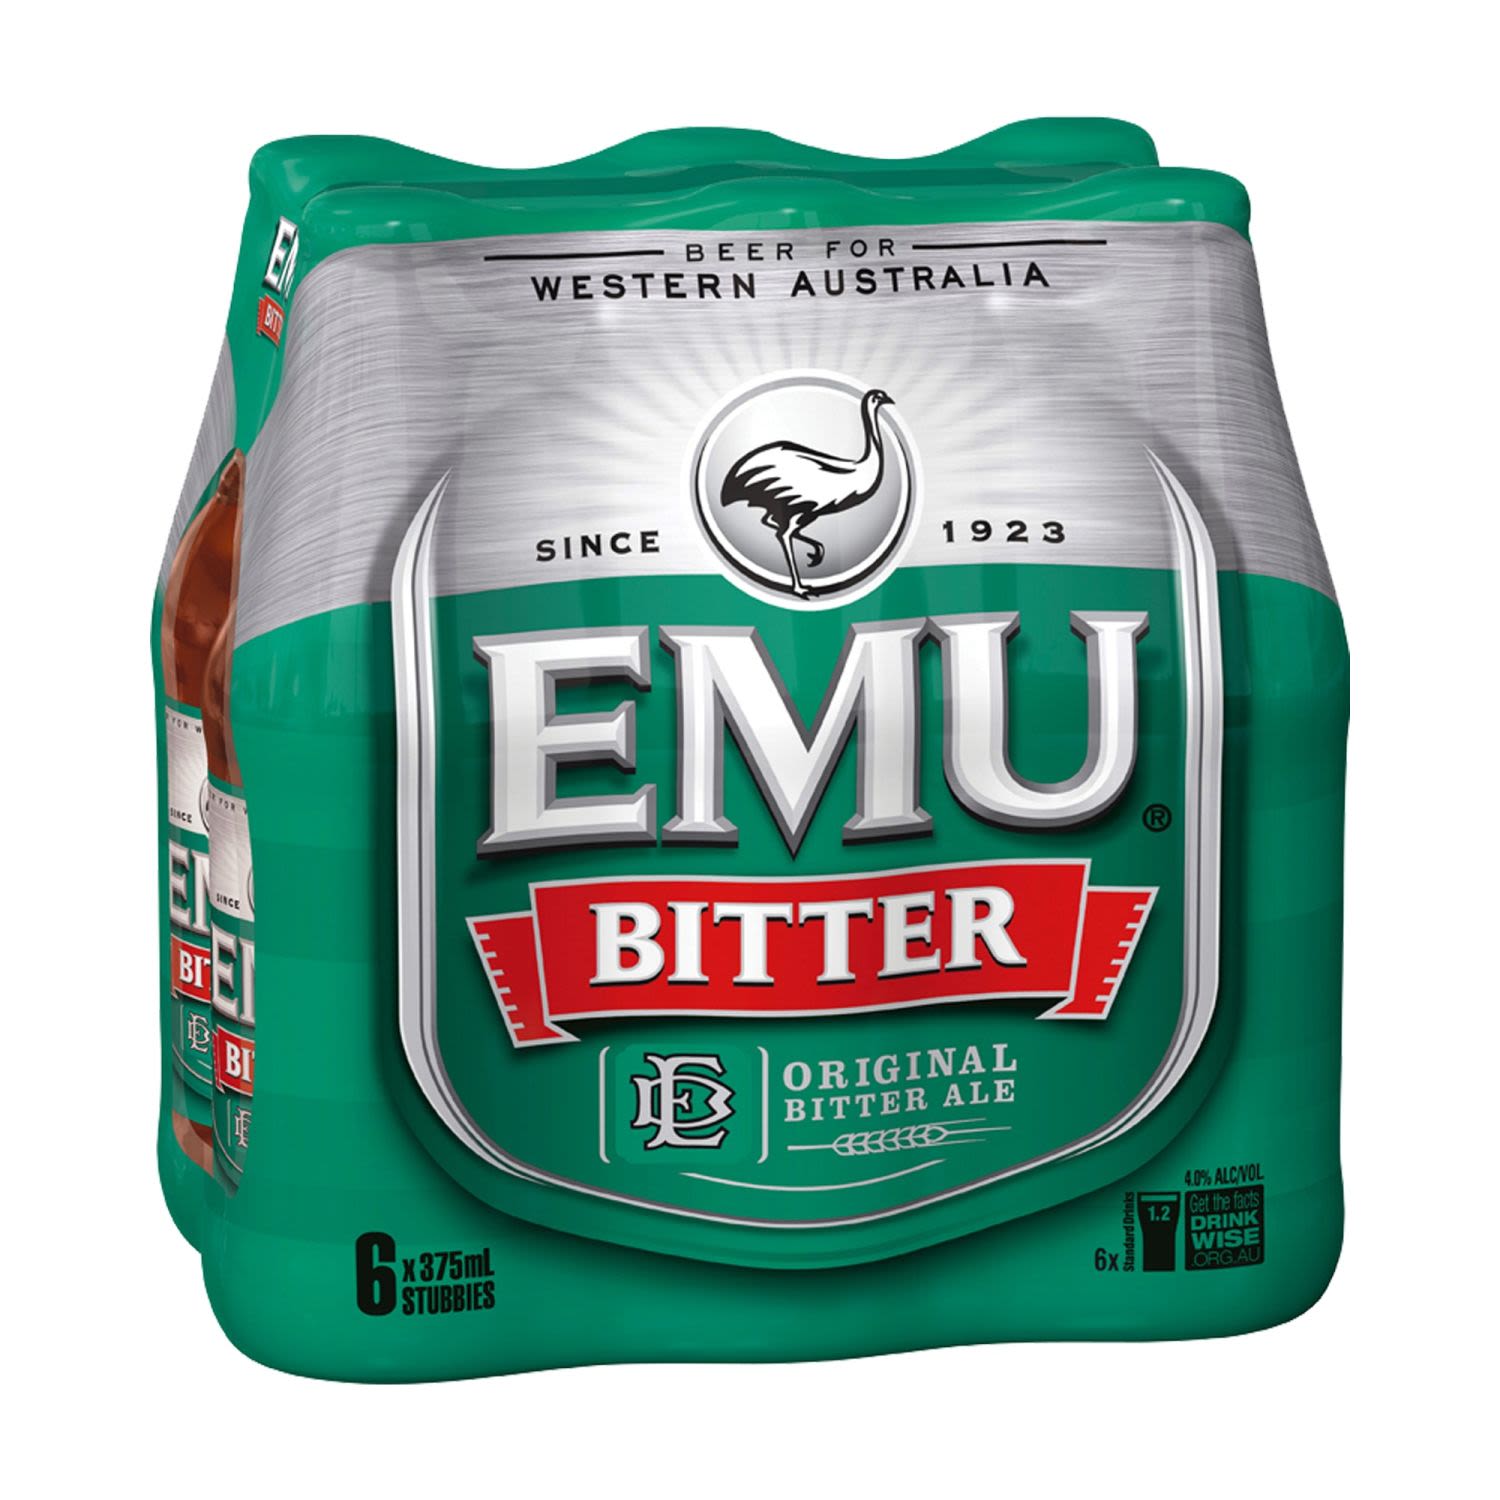 Emu Bitter Bottle 375mL 6 Pack